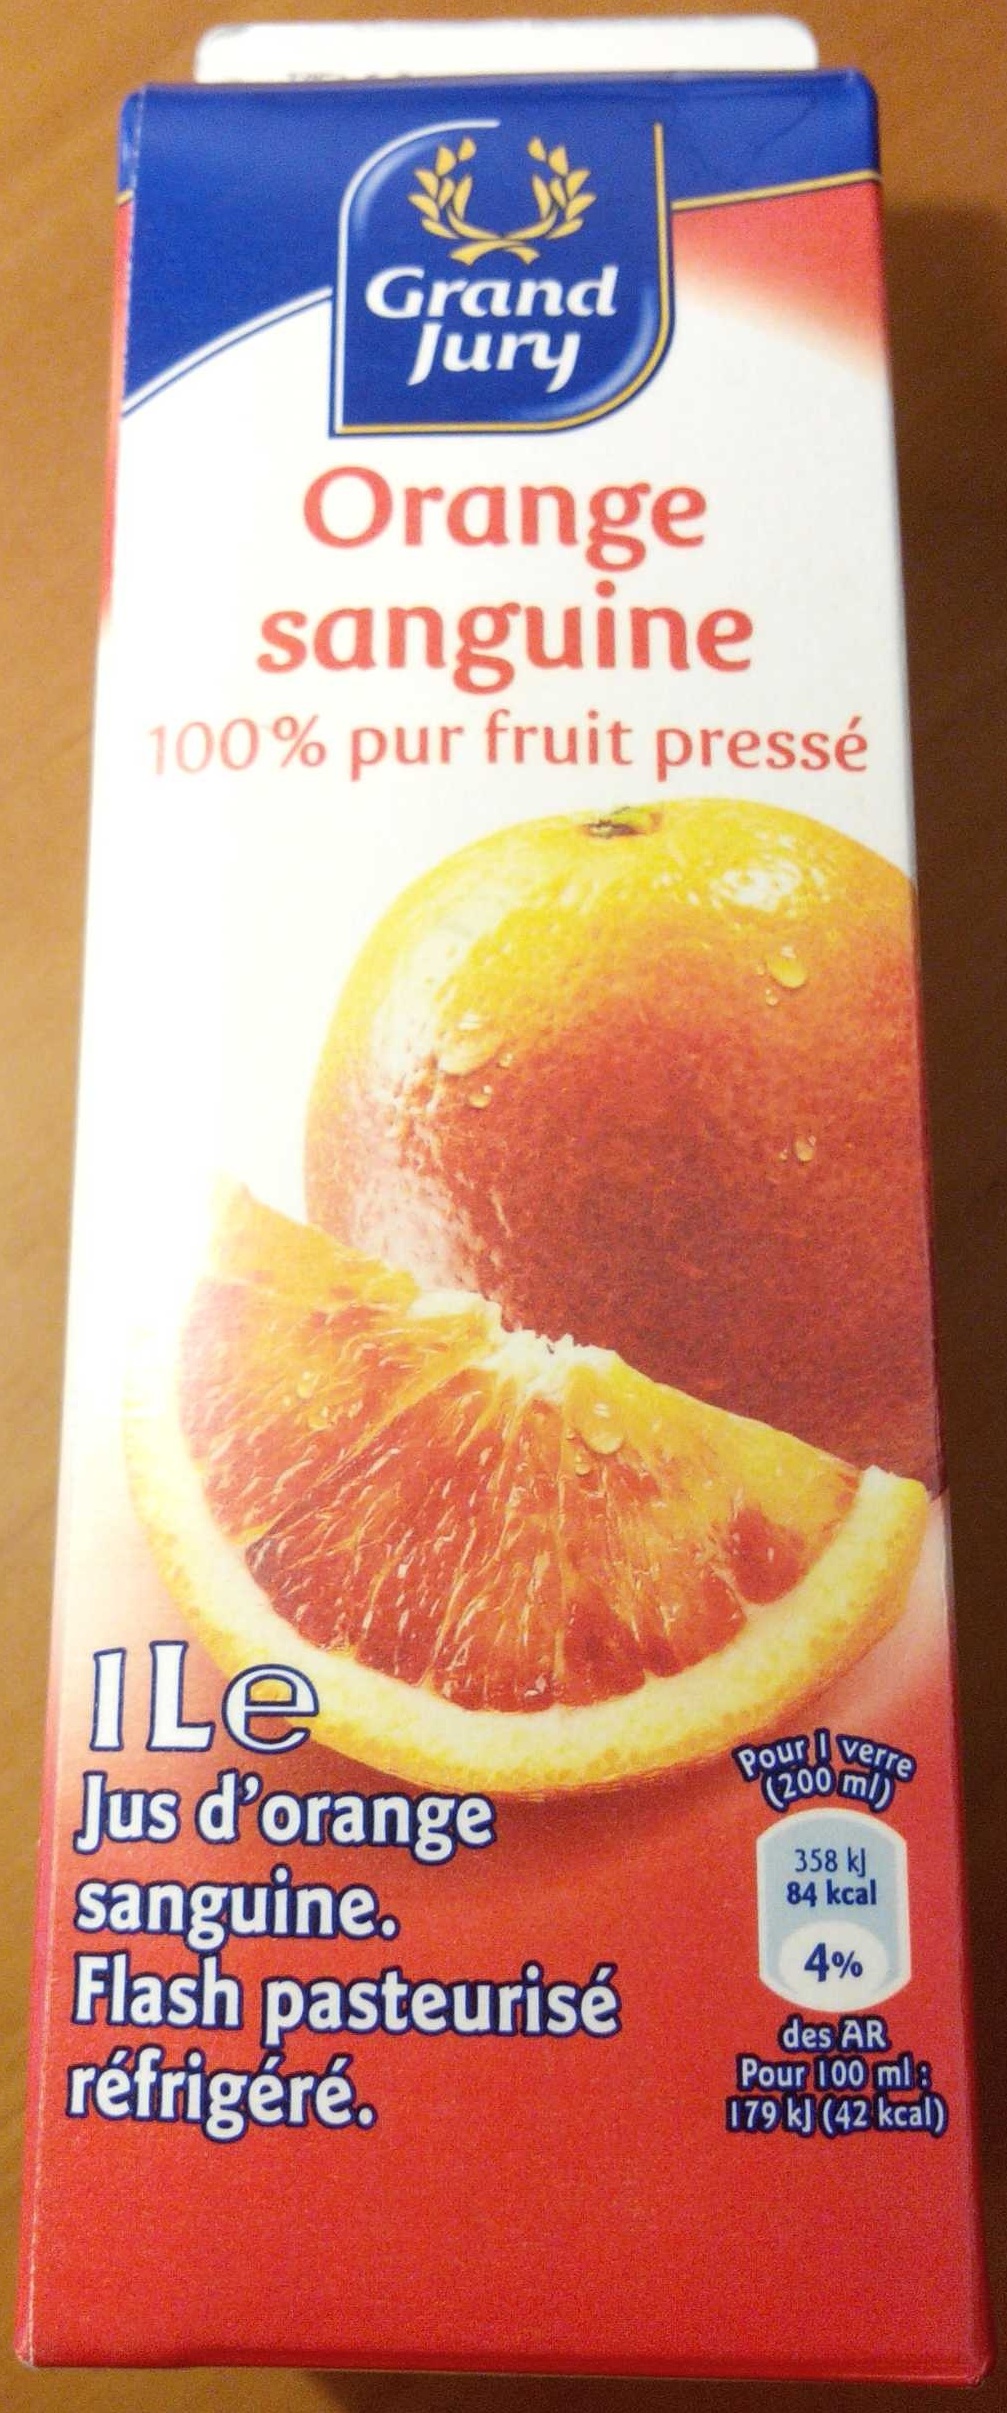 Orange sanguin 100 % pur fruit pressé - Produkt - fr